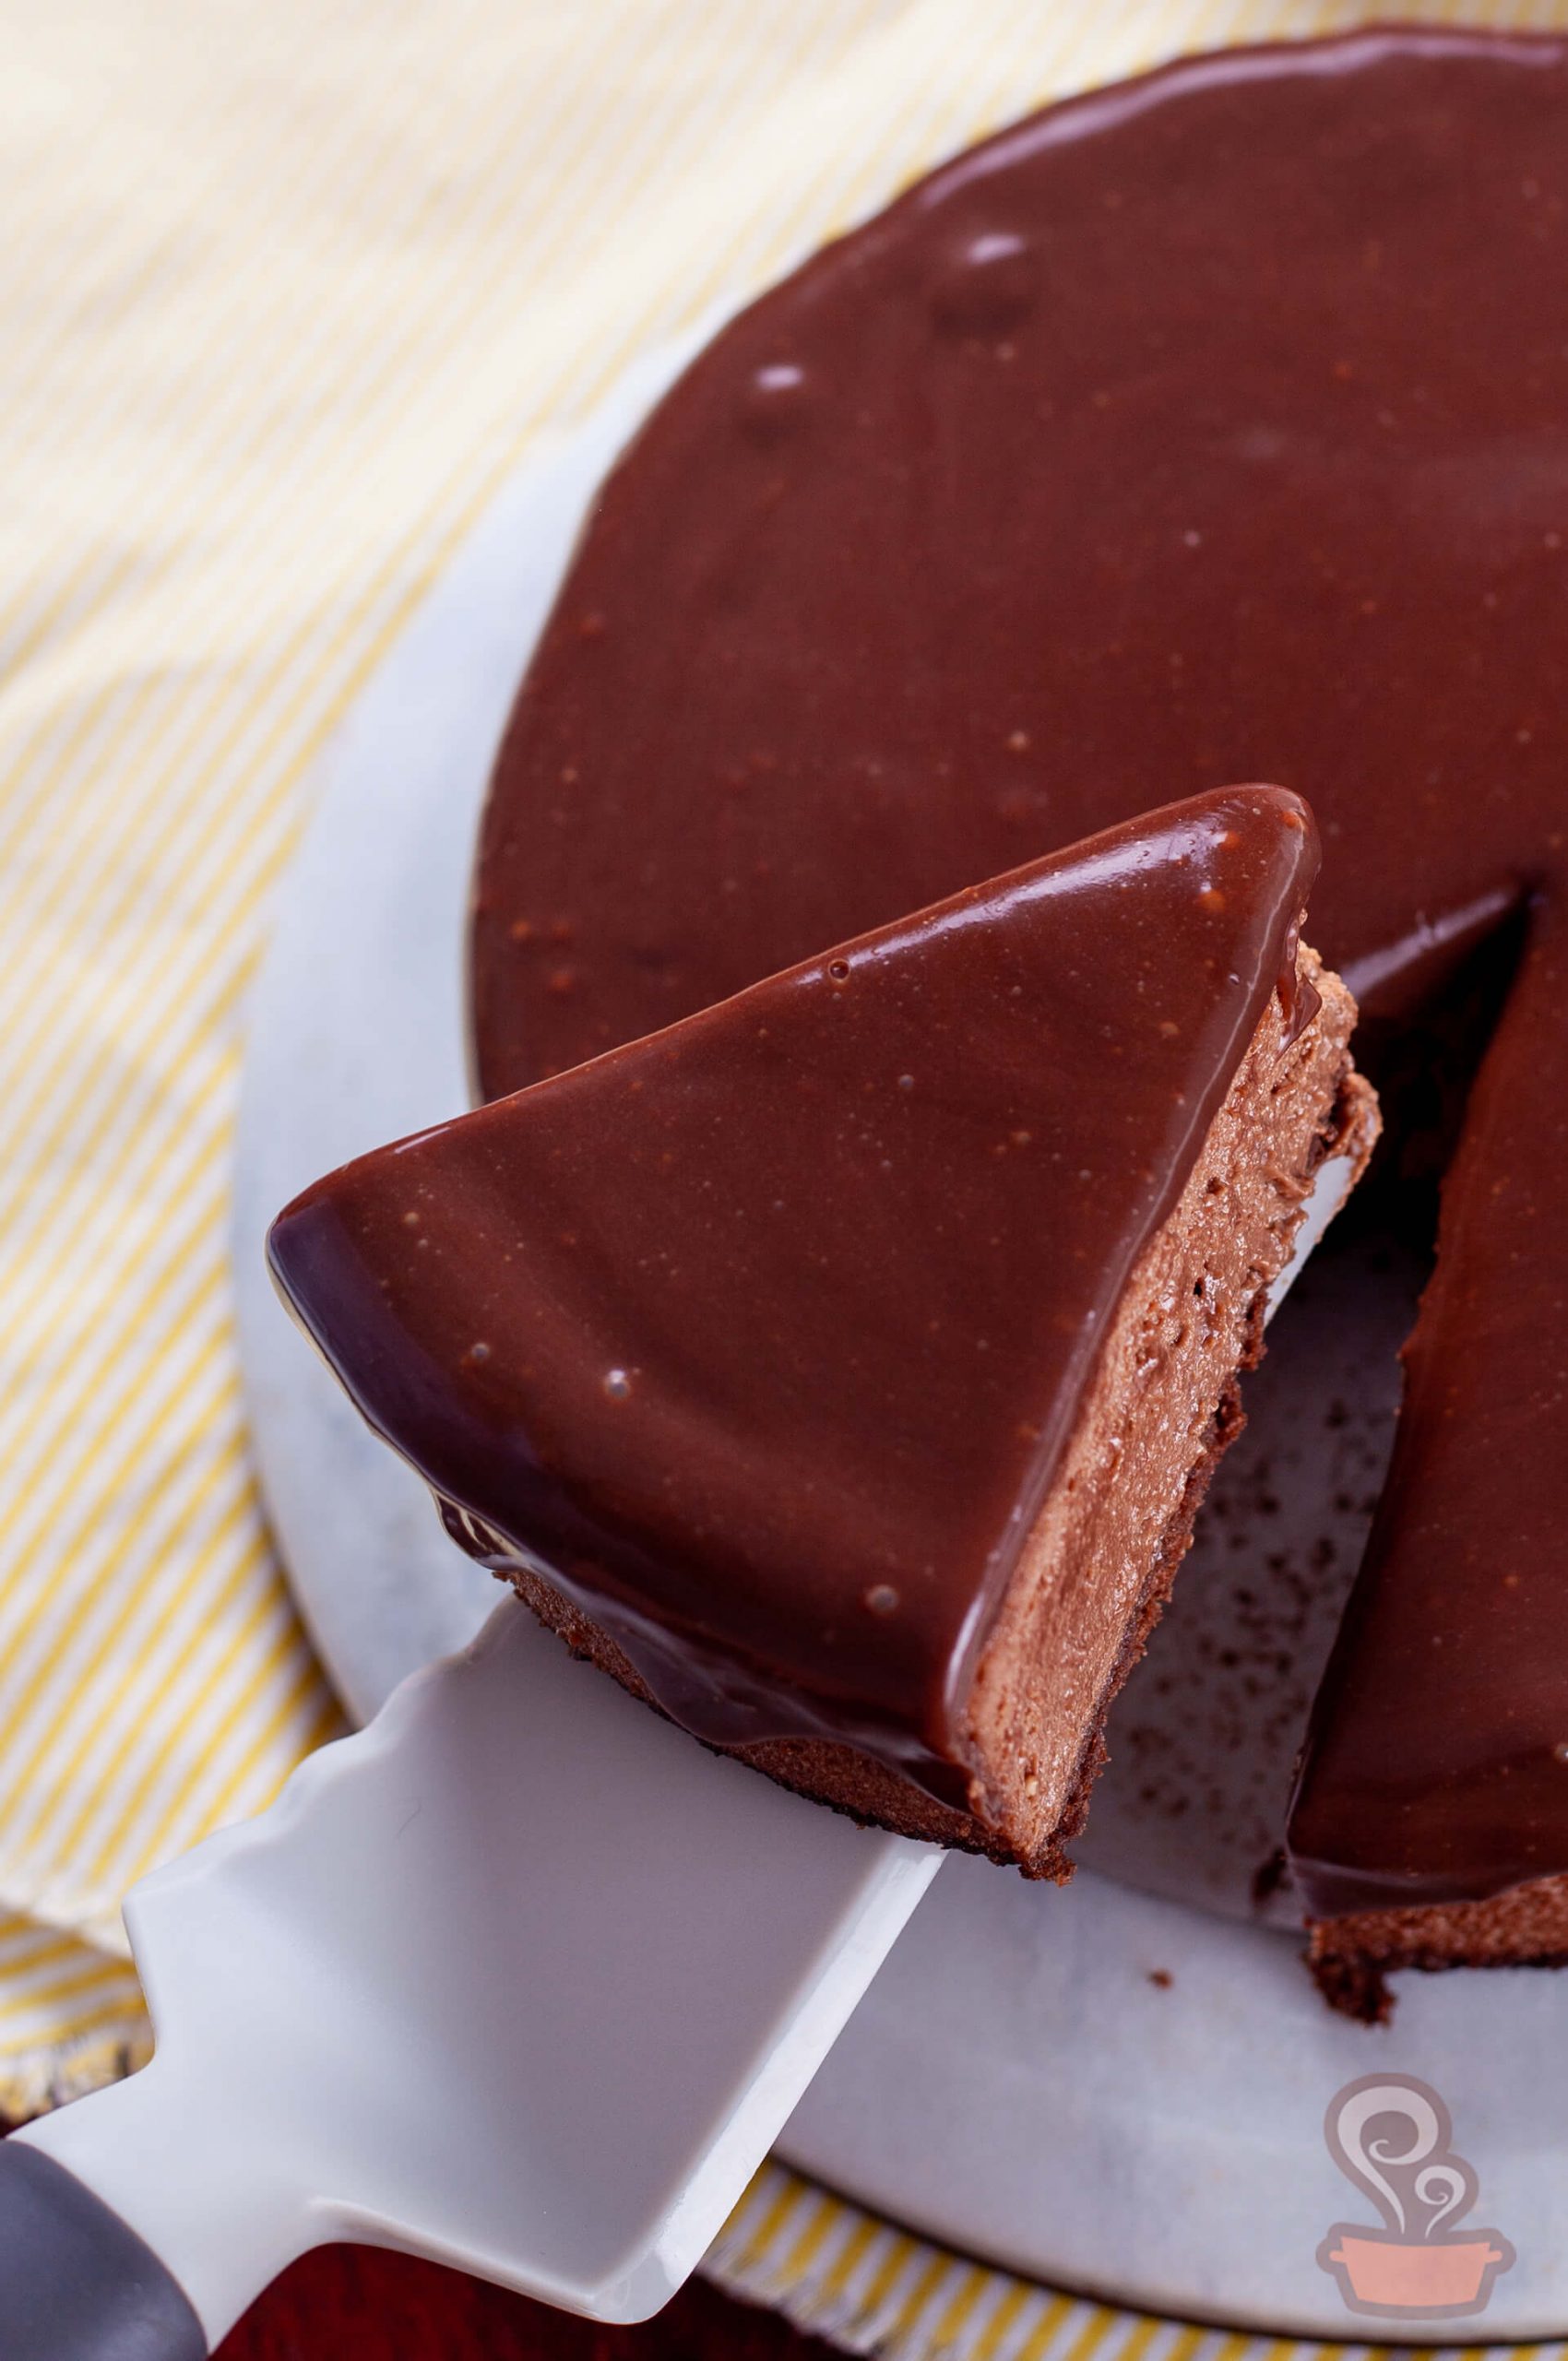 Cheesecake de chocolate - naminhapanela.com